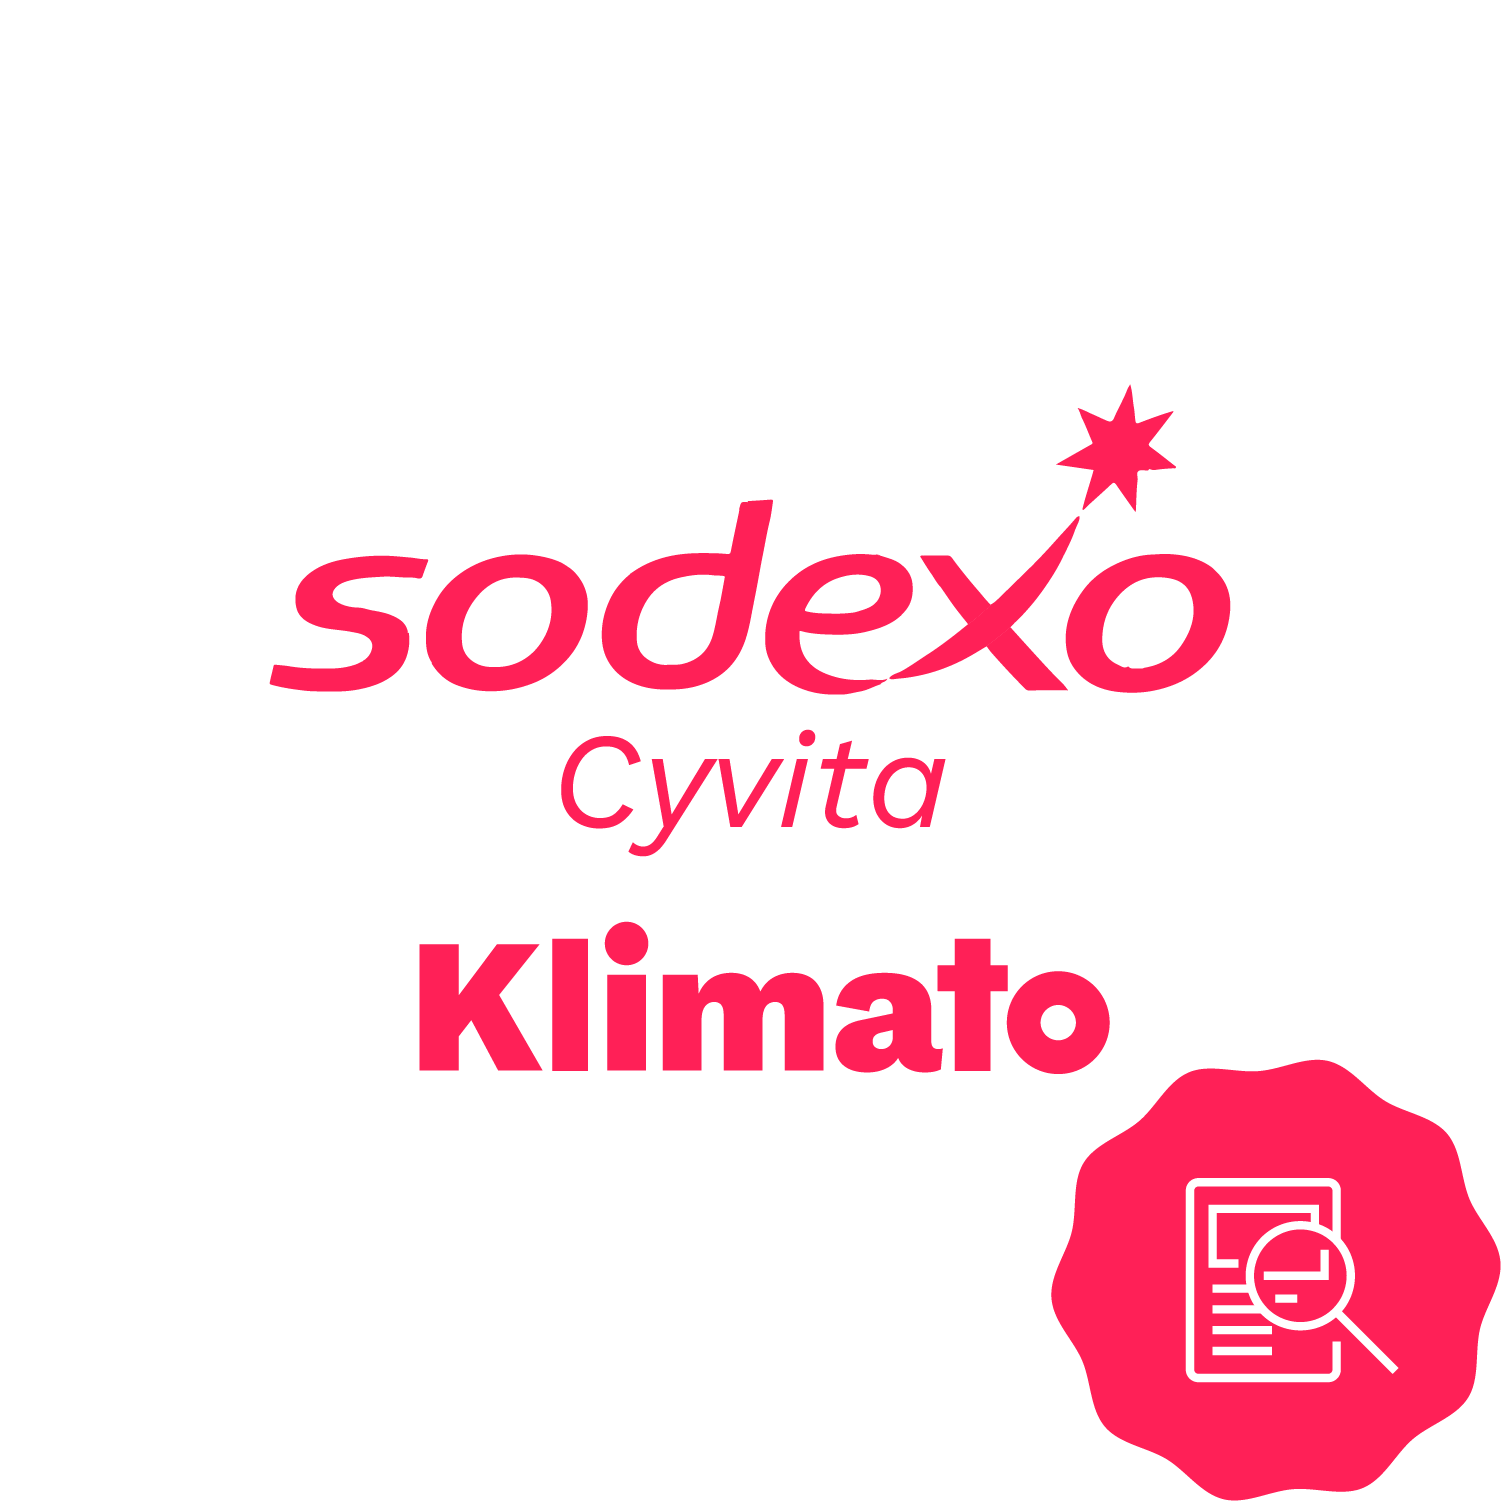 sodexo-cytiva_1-thumb